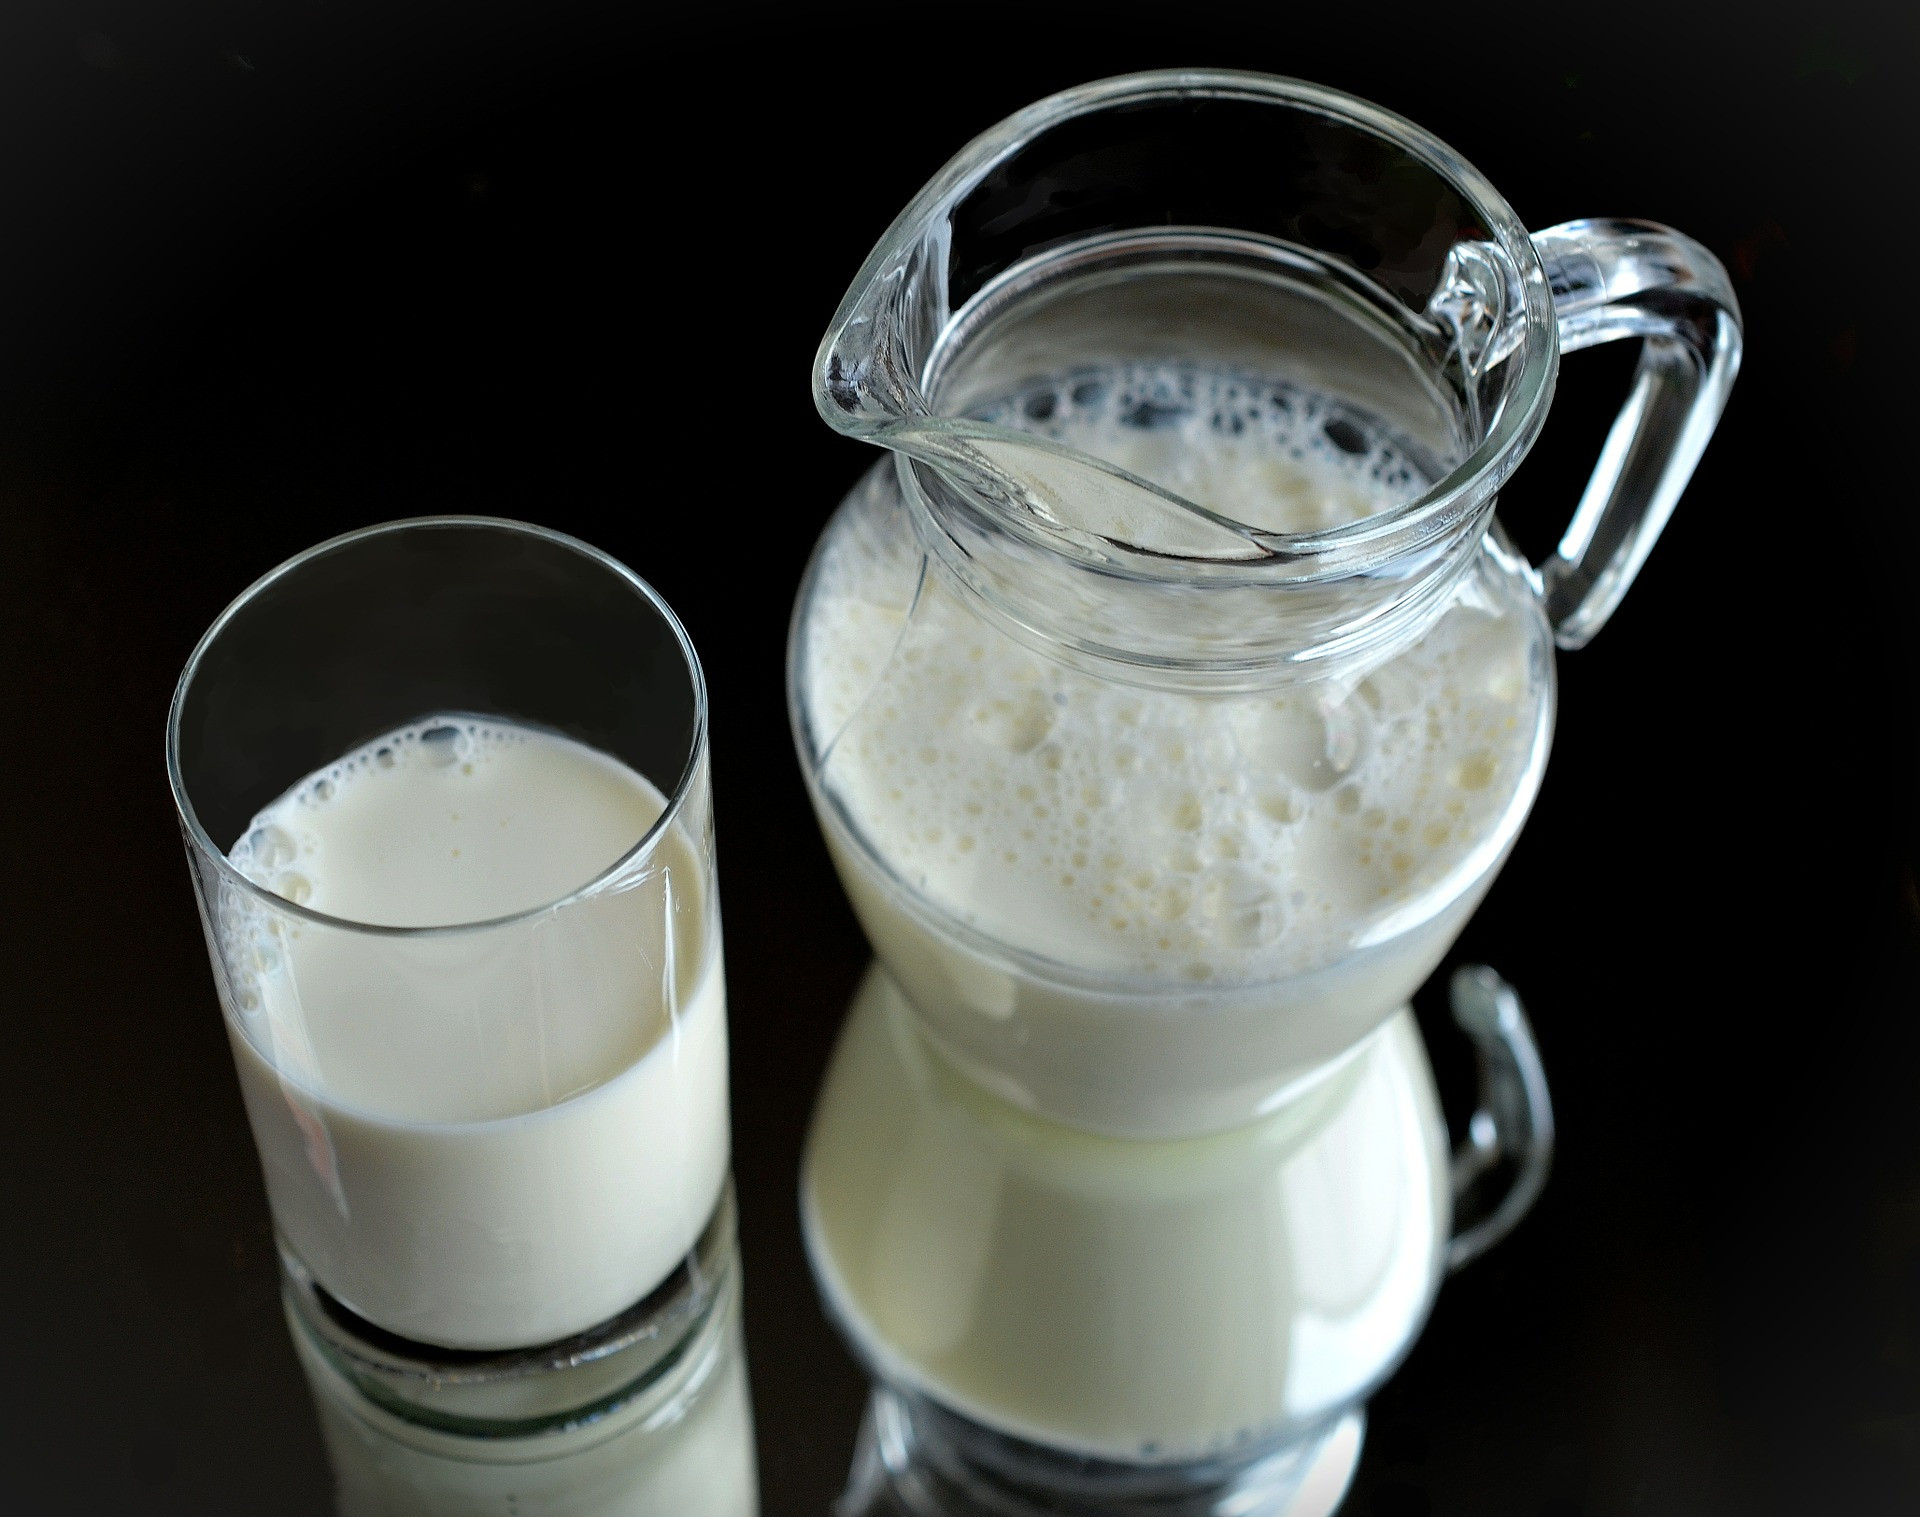 Hoci v Európe sú široko dostupné, 22 amerických štátov a Kanada zakazuje predaj nepasterizovaných mliečnych výrobkov vrátane surového mlieka. Niektoré štáty však umožňujú obmedzený predaj. Vo Wisconsine môžu kupujúci získať pololegálnu látku iba vtedy, ak si ju kúpia priamo od poľnohospodára. CDC uvádza: "Zatiaľ čo je možné ochorieť z rôznych druhov potravín, surové mlieko je jedným z najrizikovejších zo všetkých." 